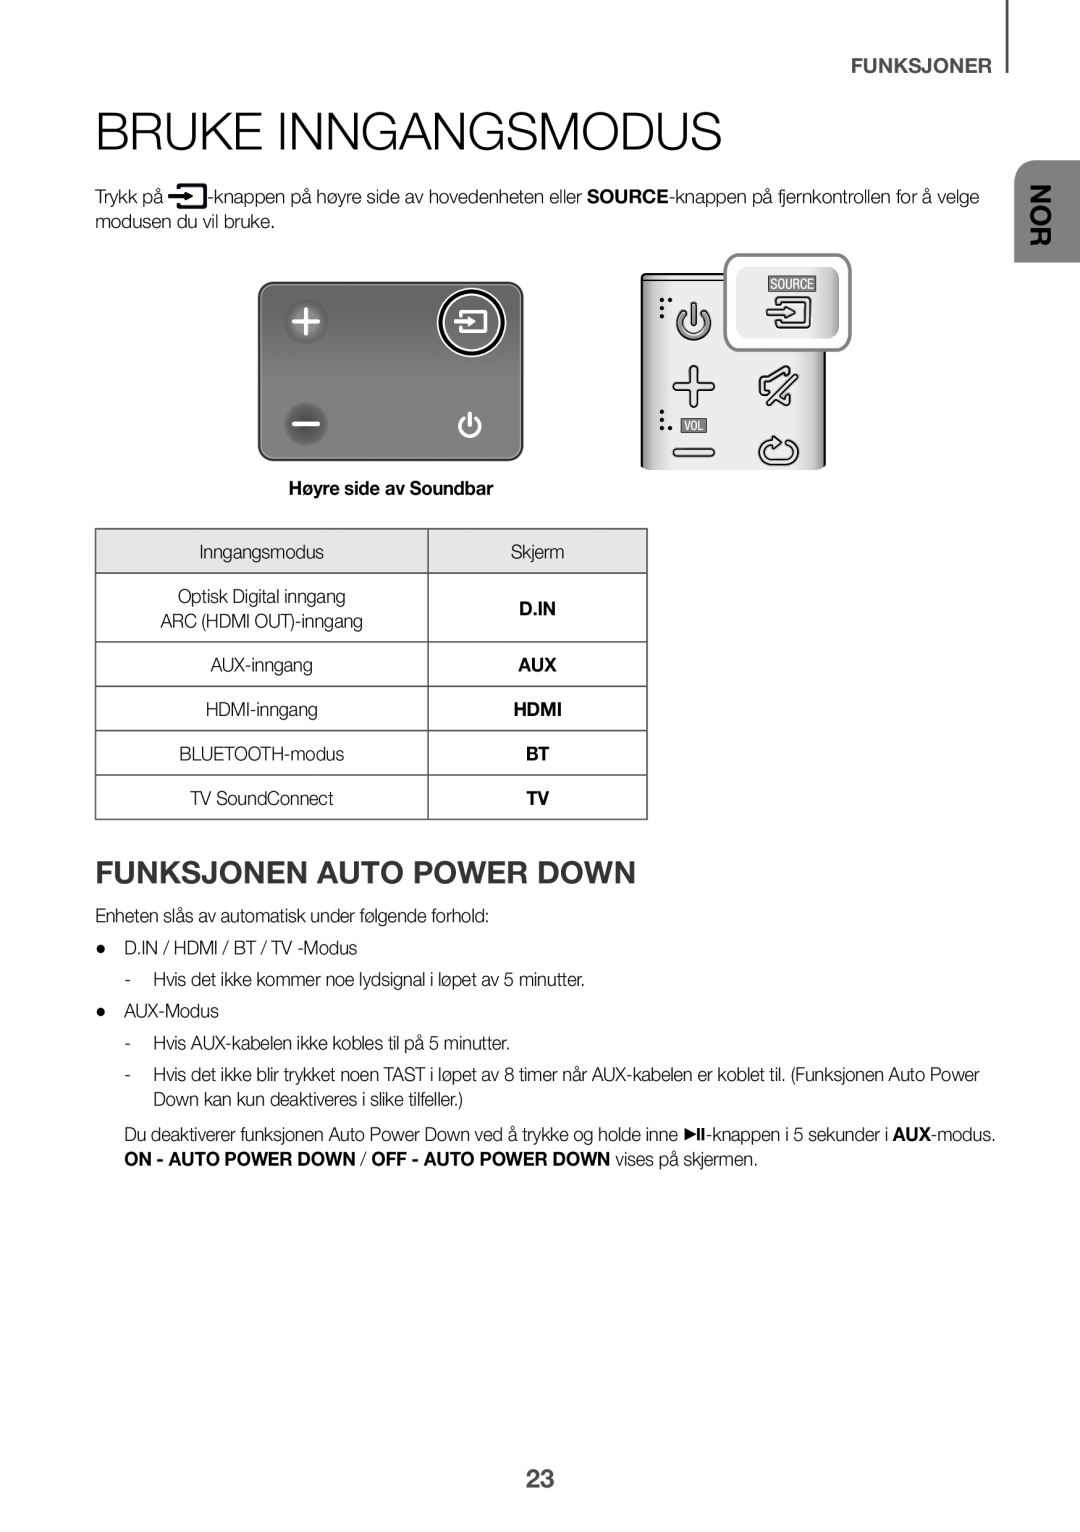 Samsung HW-K651/EN, HW-K650/EN manual Bruke Inngangsmodus, Funksjonen Auto Power Down, Funksjoner, Høyre side av Soundbar 